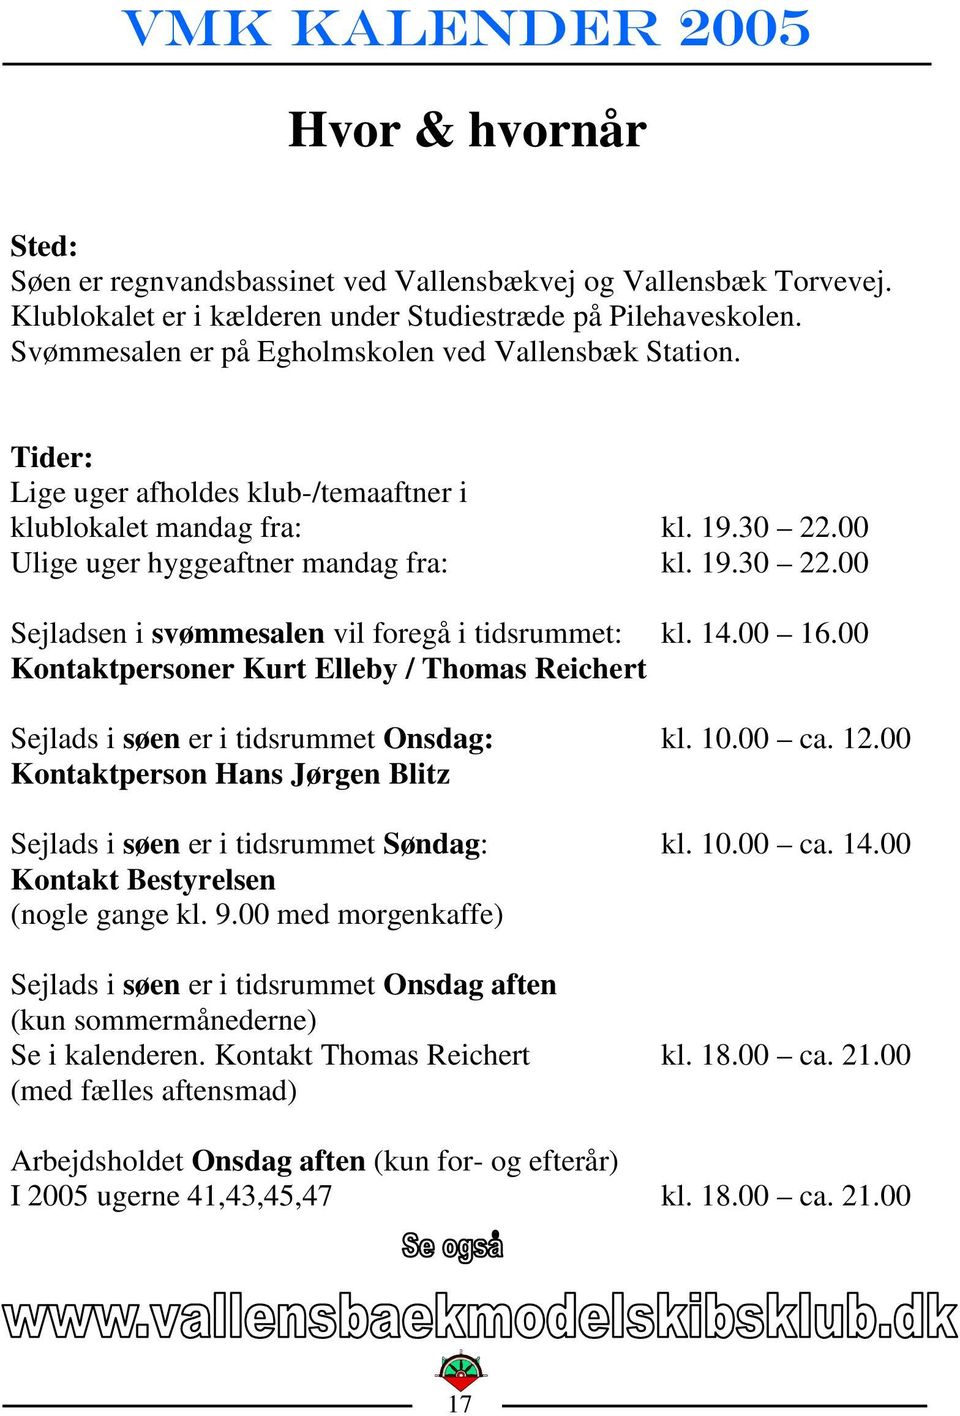 14.00 16.00 Kontaktpersoner Kurt Elleby / Thomas Reichert Sejlads i søen er i tidsrummet Onsdag: kl. 10.00 ca. 12.00 Kontaktperson Hans Jørgen Blitz Sejlads i søen er i tidsrummet Søndag: kl. 10.00 ca. 14.